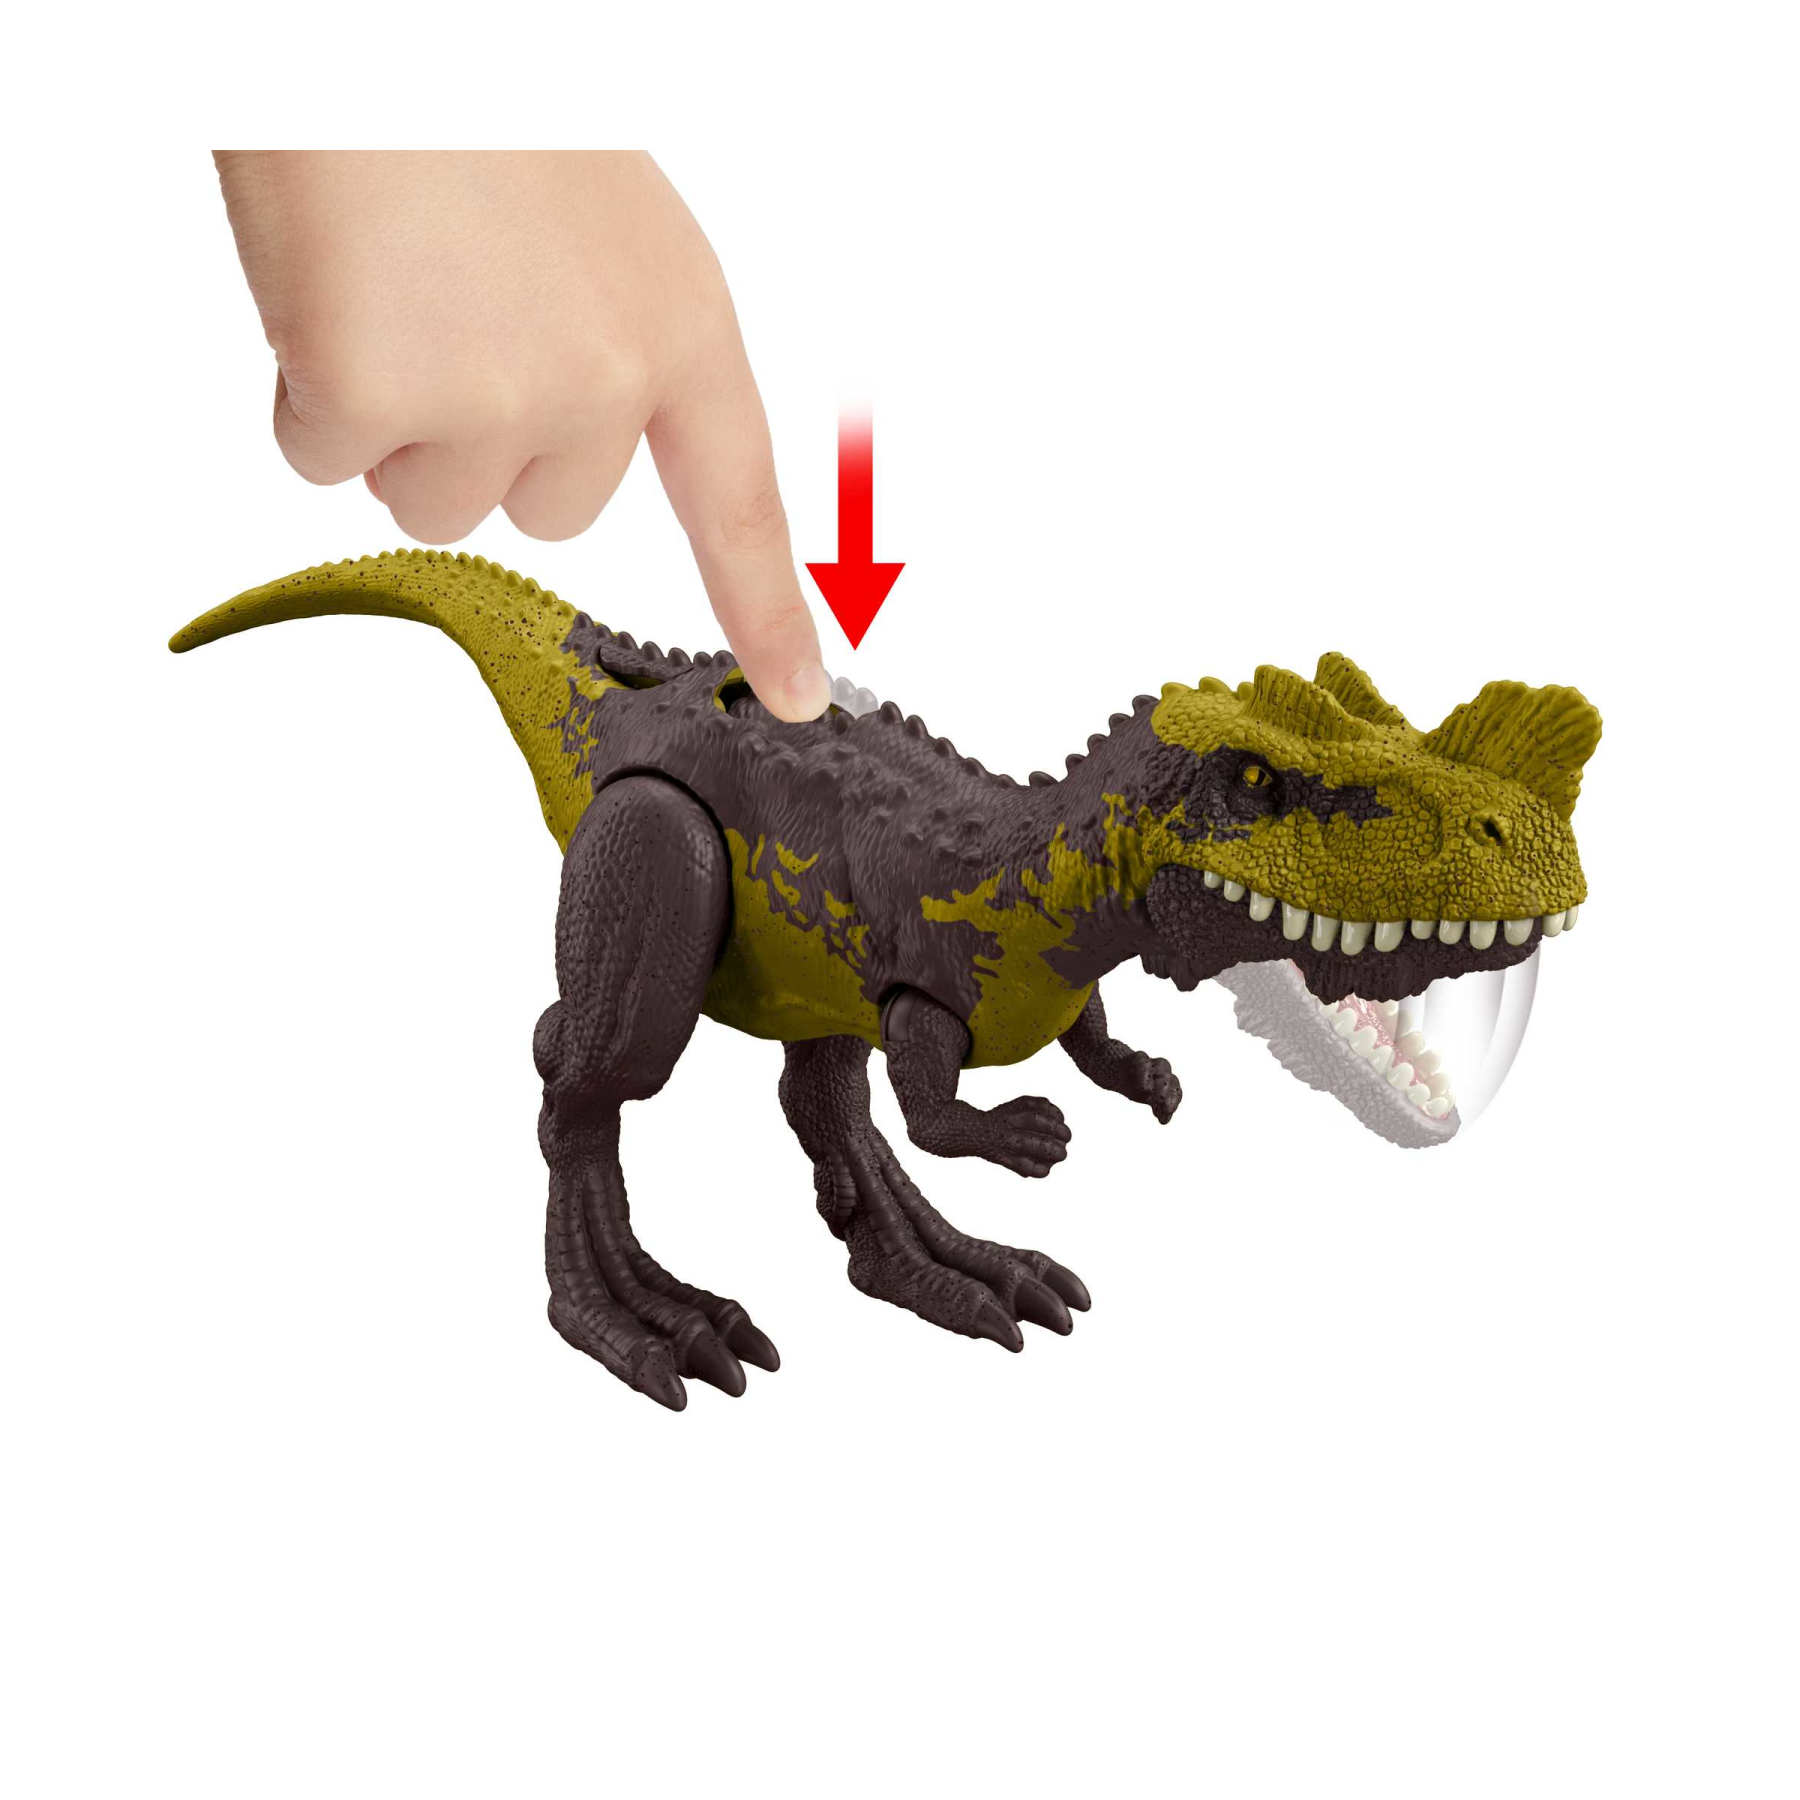 Jurassic world attacco fatale - genyodectes serus, dinosauro con articolazioni mobili e azione d'attacco specifica, giocattolo per bambini, 4+ anni, hln65 - Jurassic World